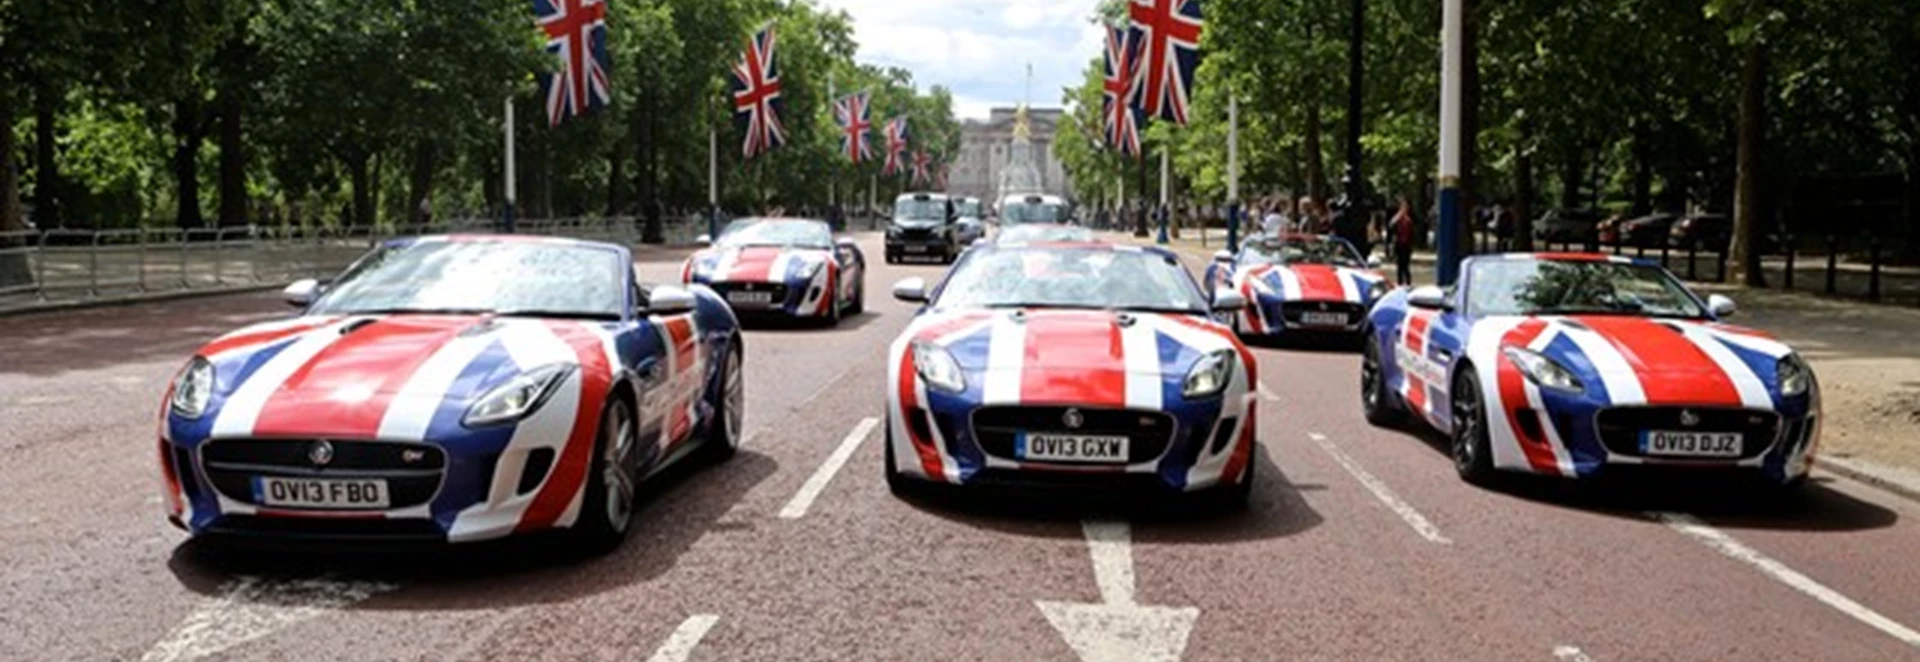 Top five British cars 